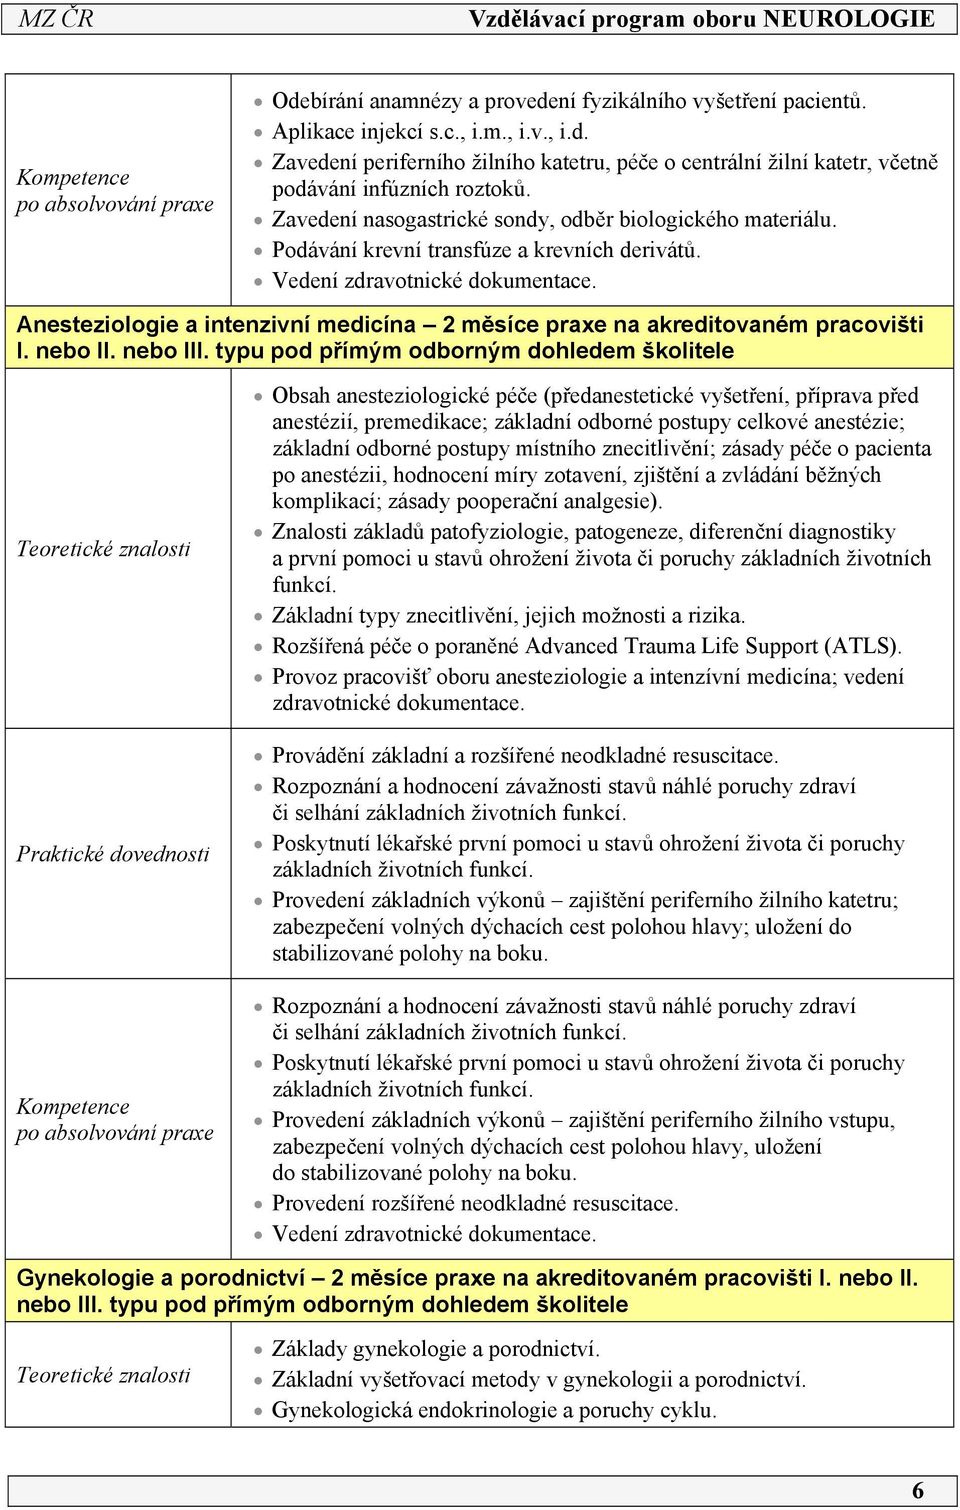 Anesteziologie a intenzivní medicína měsíce praxe na akreditovaném pracovišti I. nebo II. nebo III.